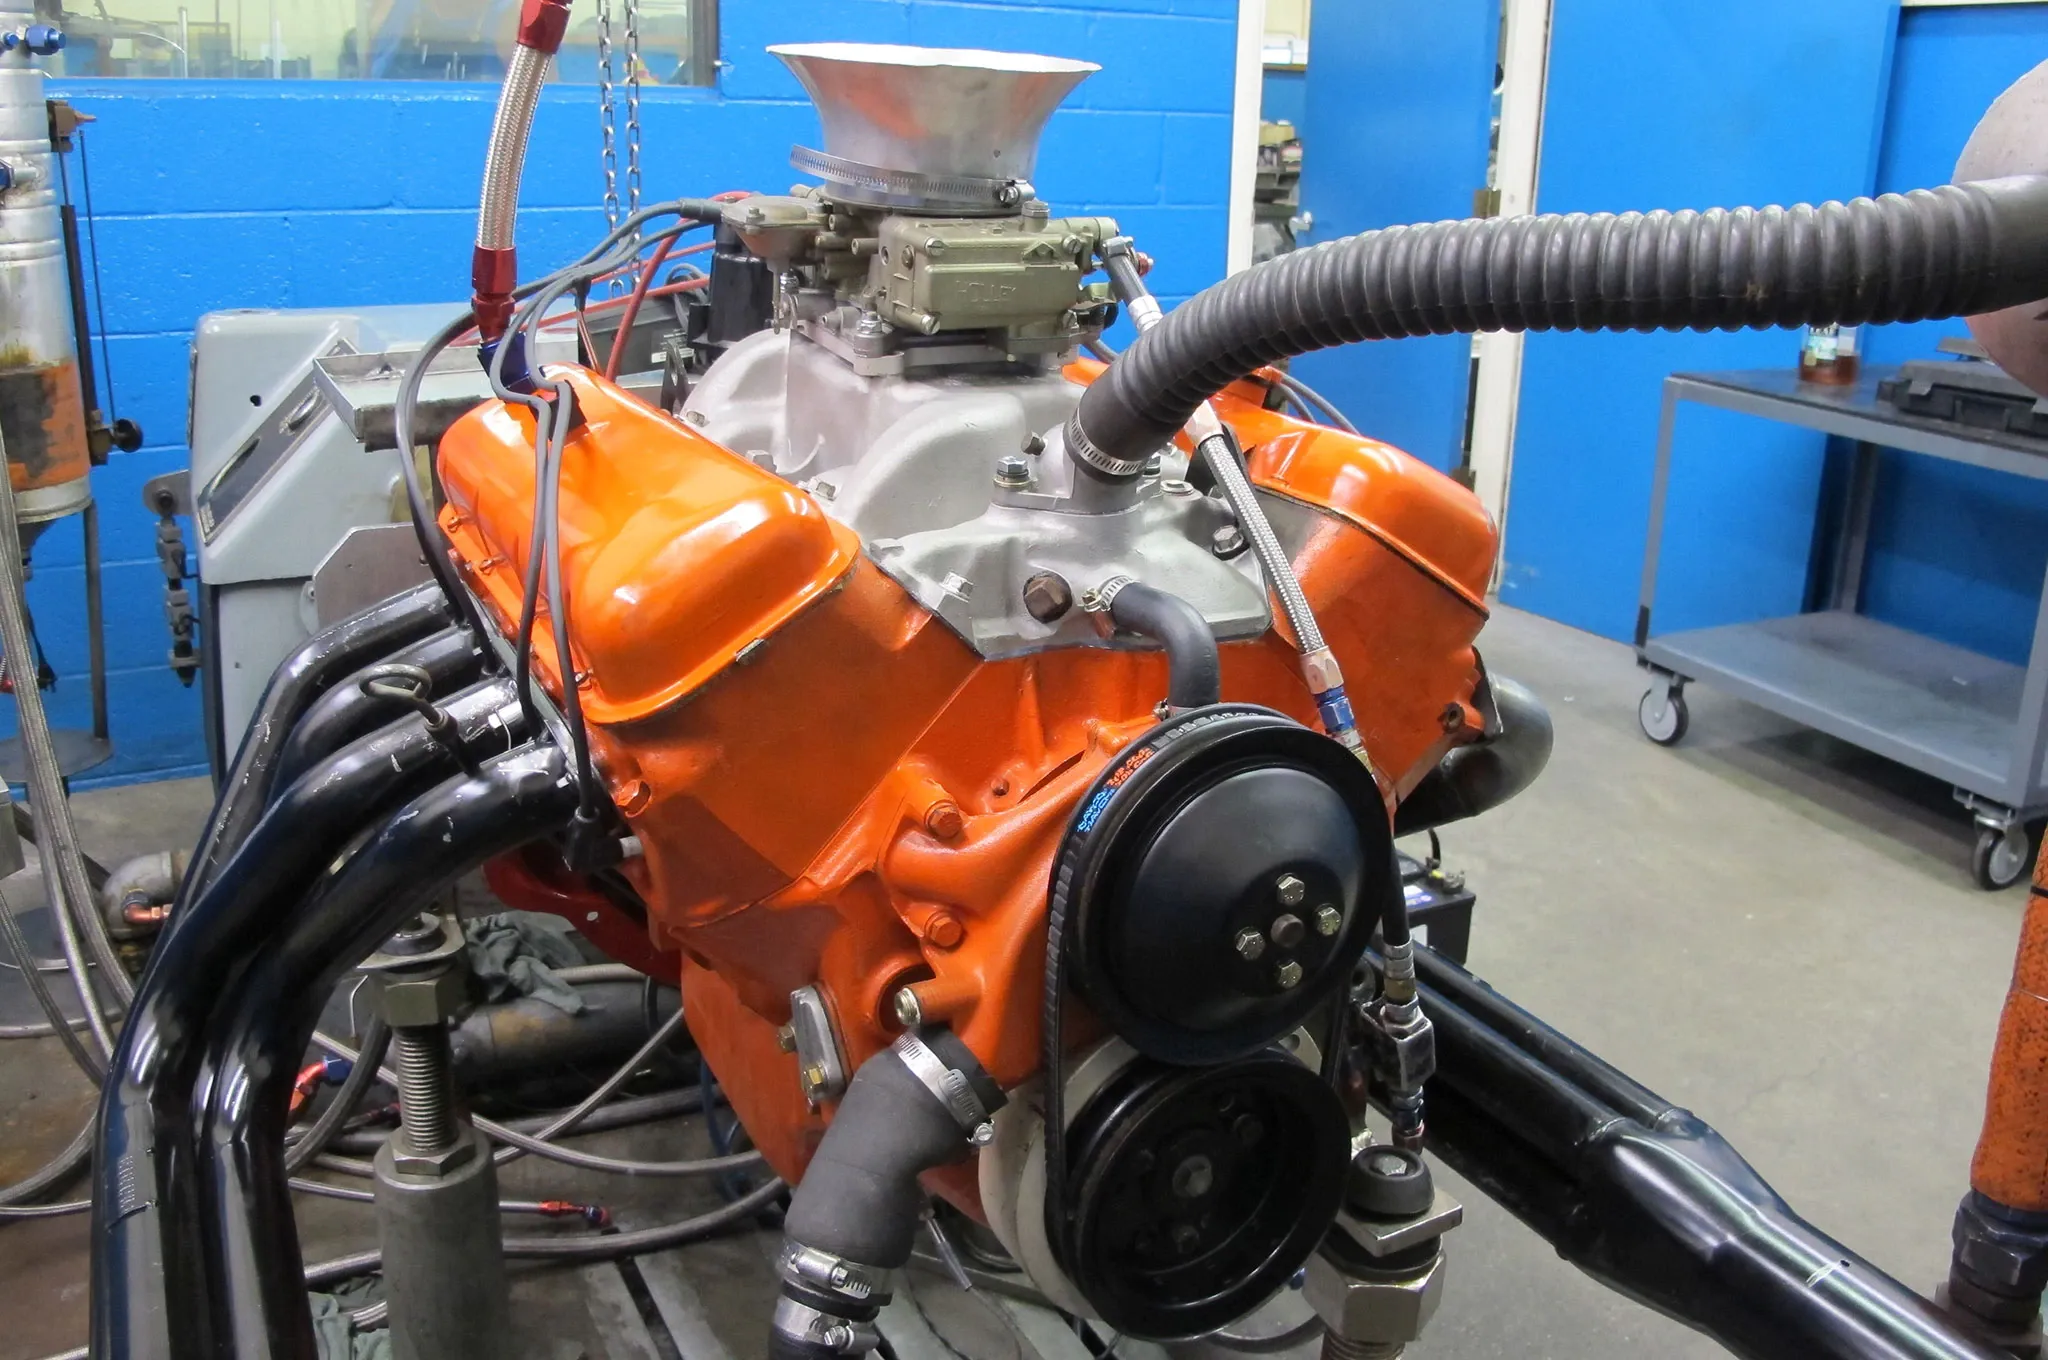 427 Chevy Mystery Engine via Hotrod